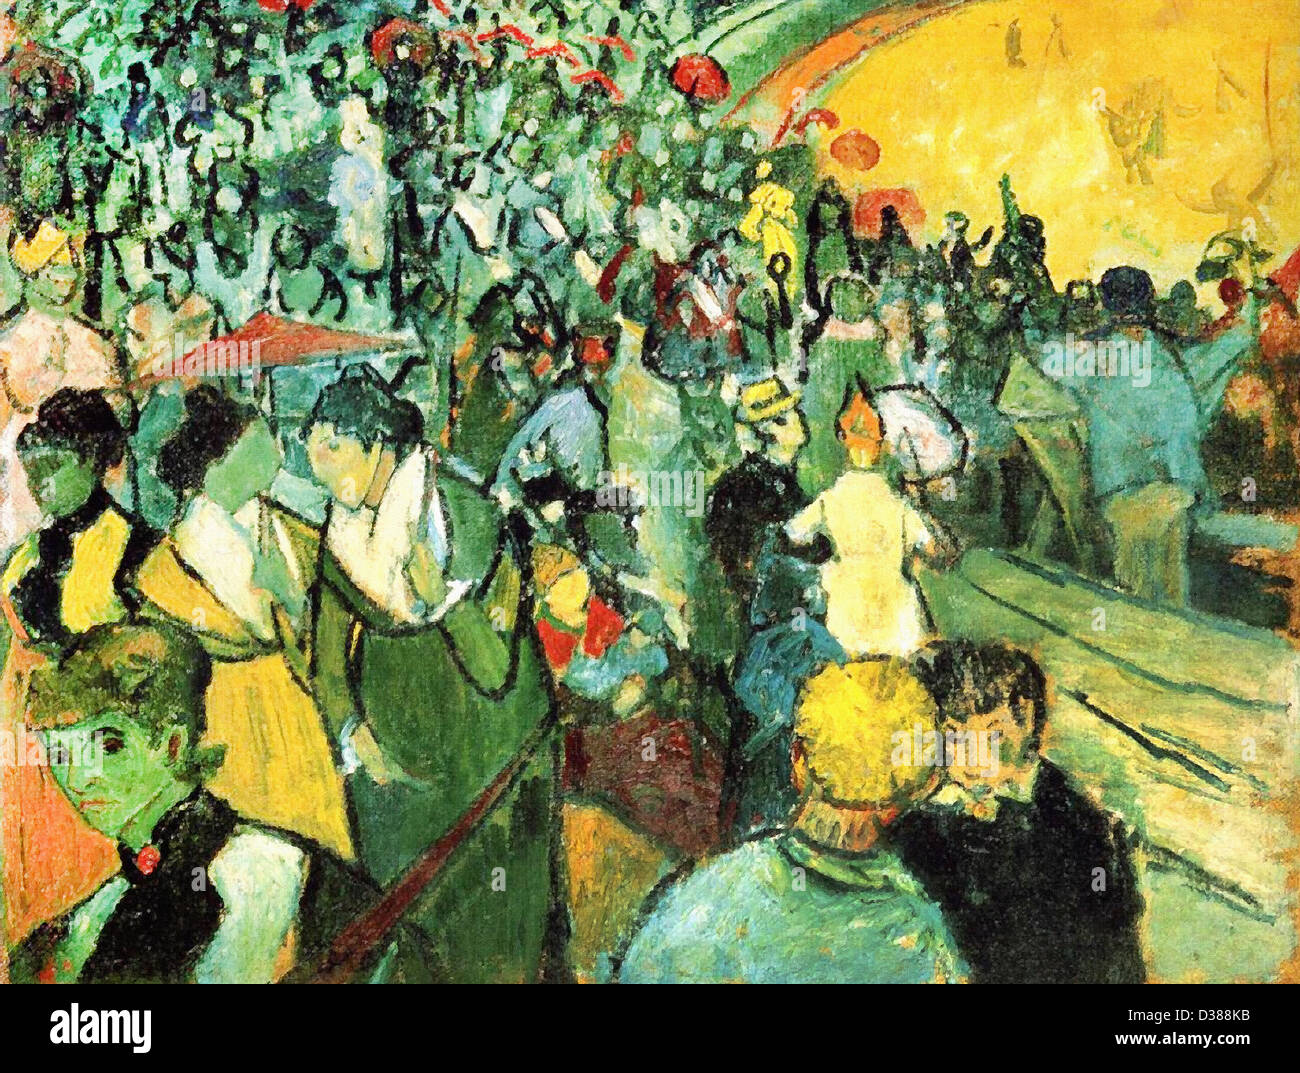 Vincent van Gogh, les spectateurs dans l'arène à Arles. 1888. Cloisonnism. Huile sur toile. L'Ermitage, Saint-Pétersbourg, Russie. Banque D'Images